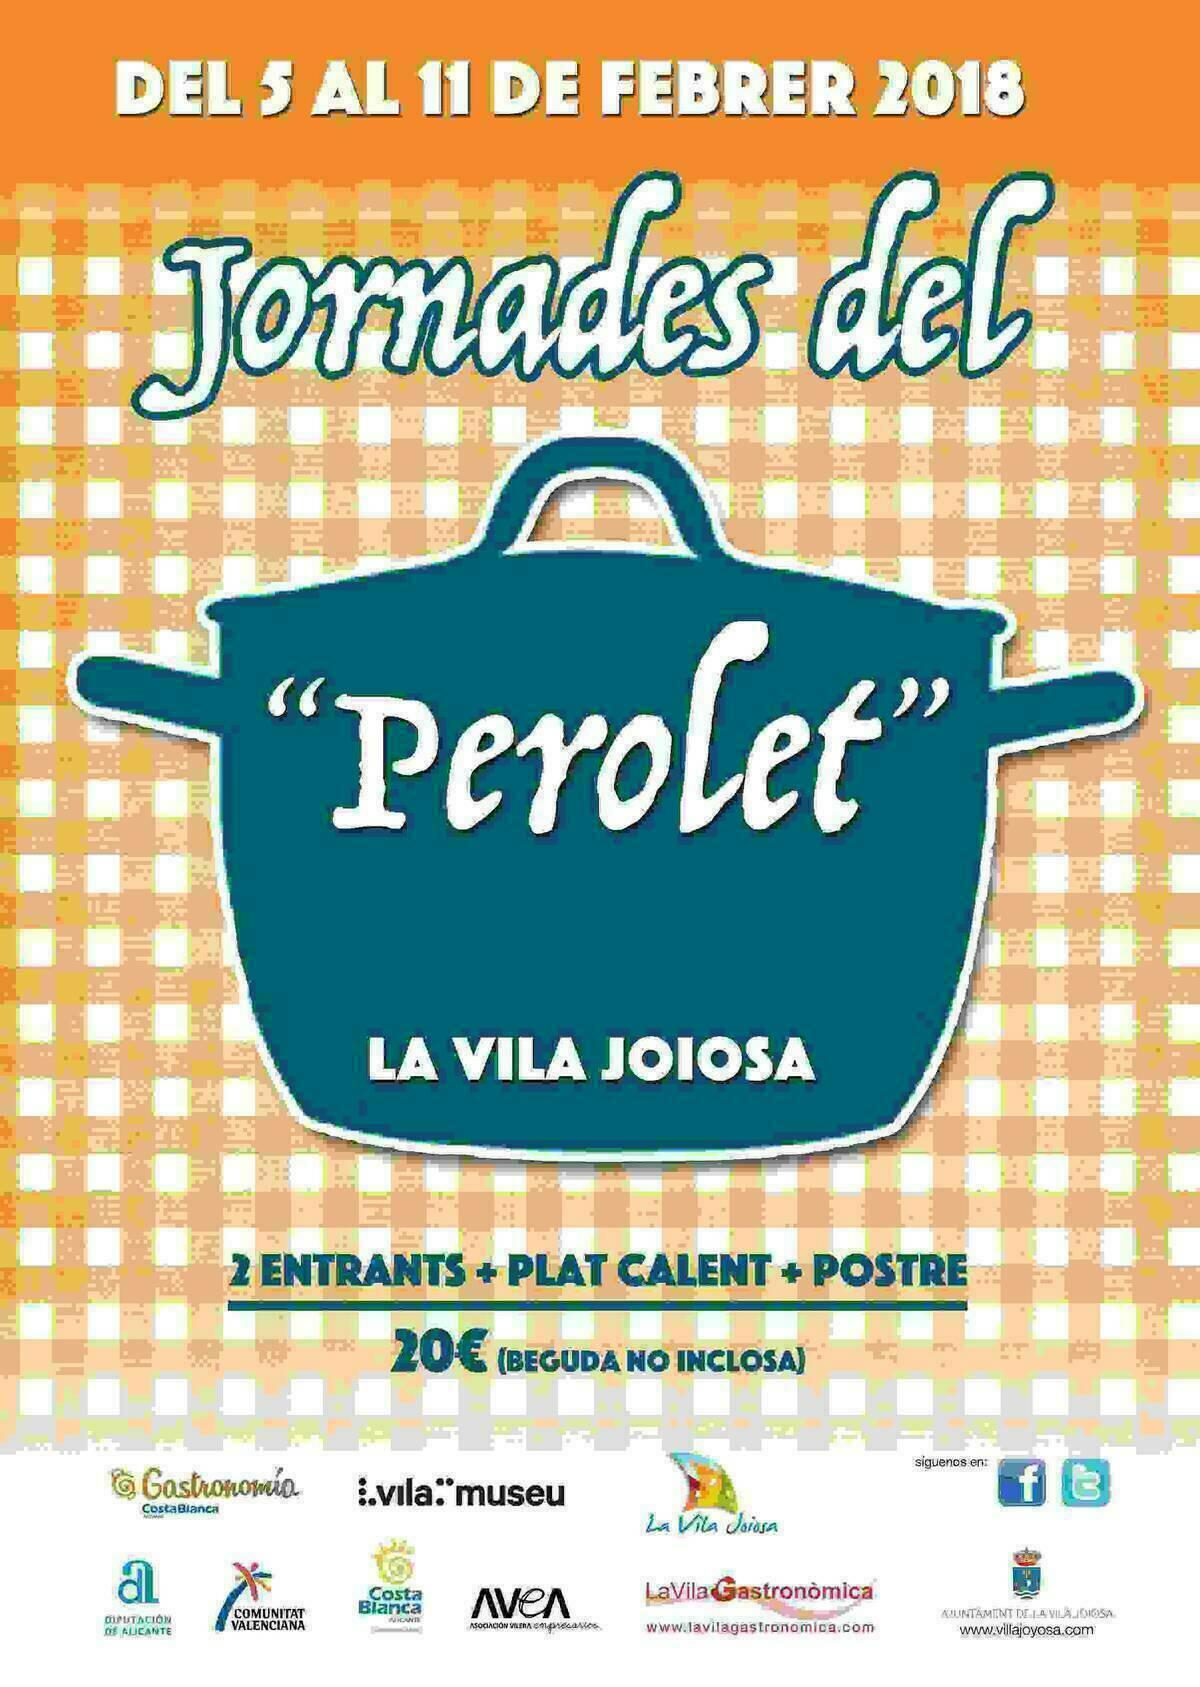 La Vila Joiosa añade un nuevo evento gastronómico a su calendario